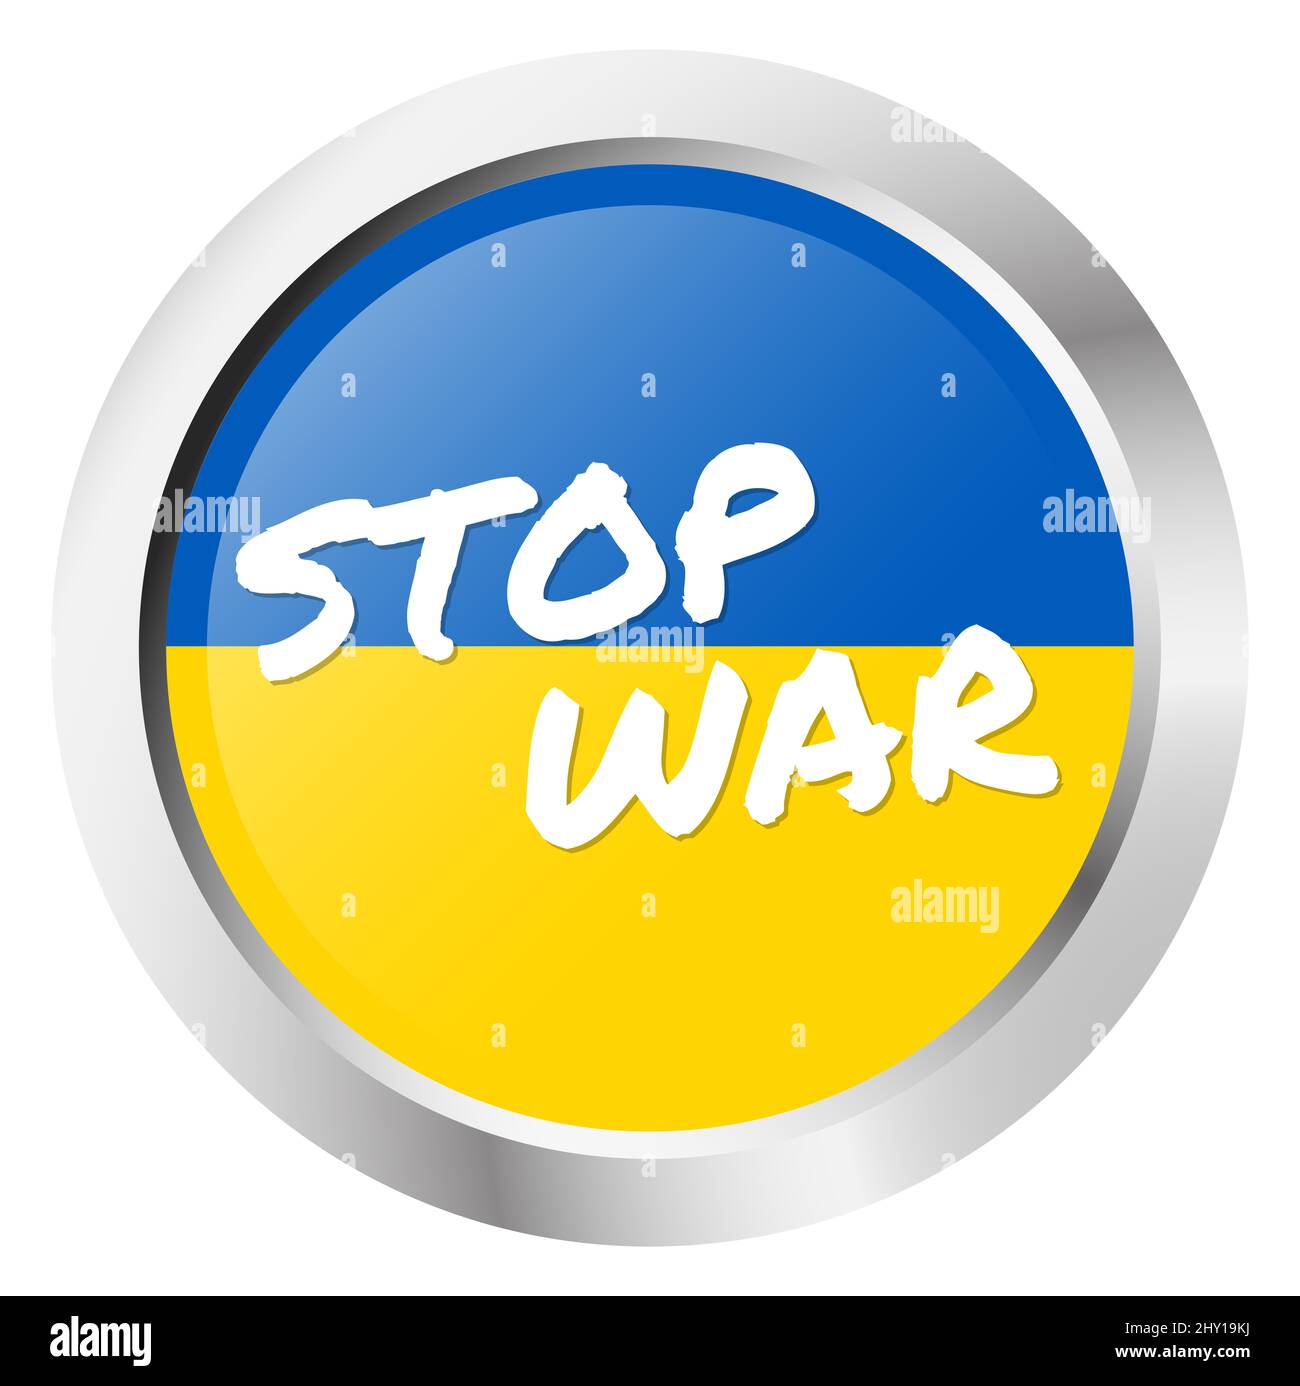 illustrazione vettoriale eps con pulsante rotondo con colori paese ucraina e testo bianco FERMARE LA GUERRA per il conflitto con la russia 2022 Foto Stock